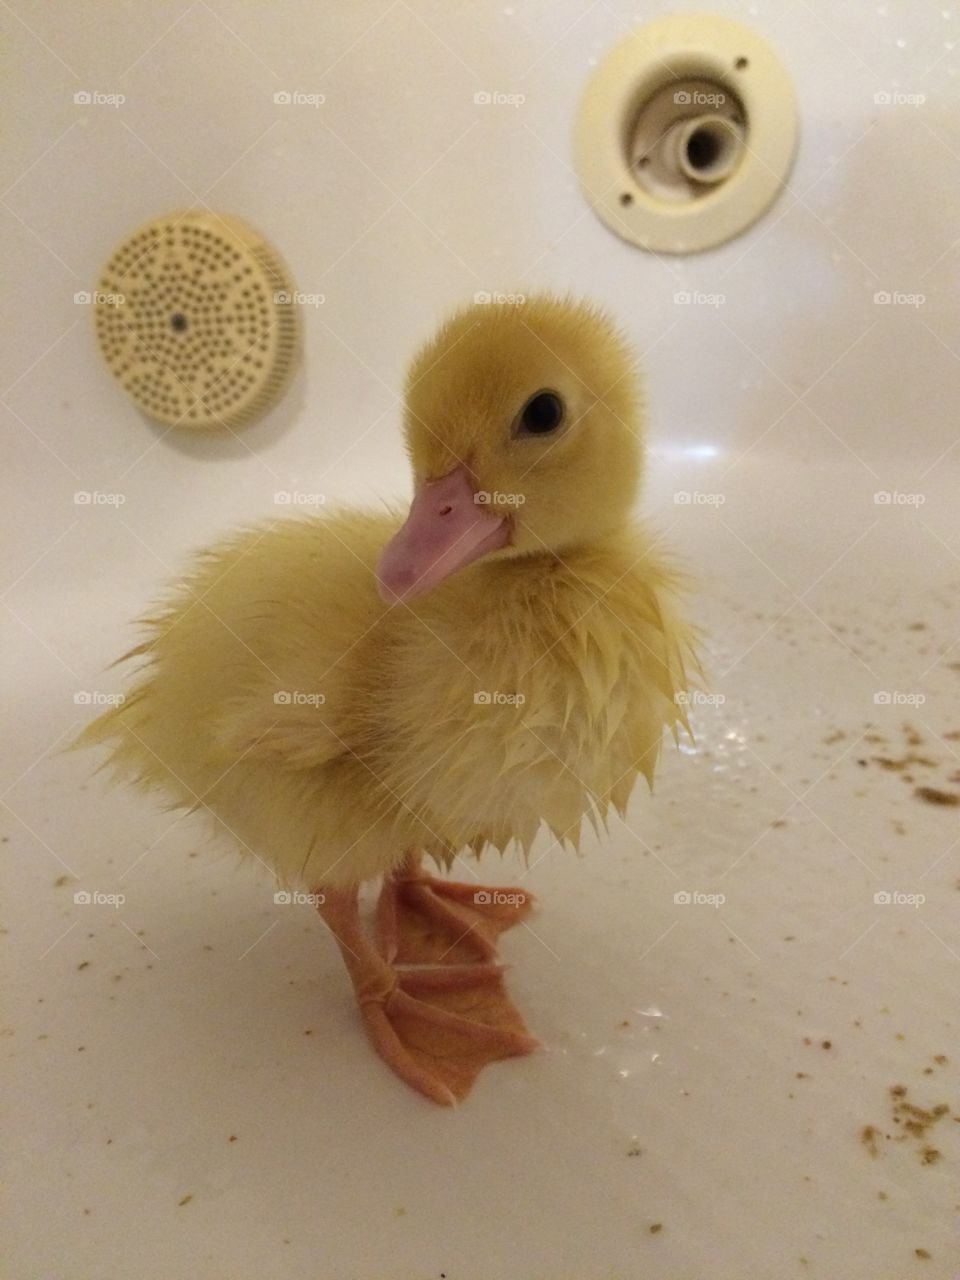 Happy duck